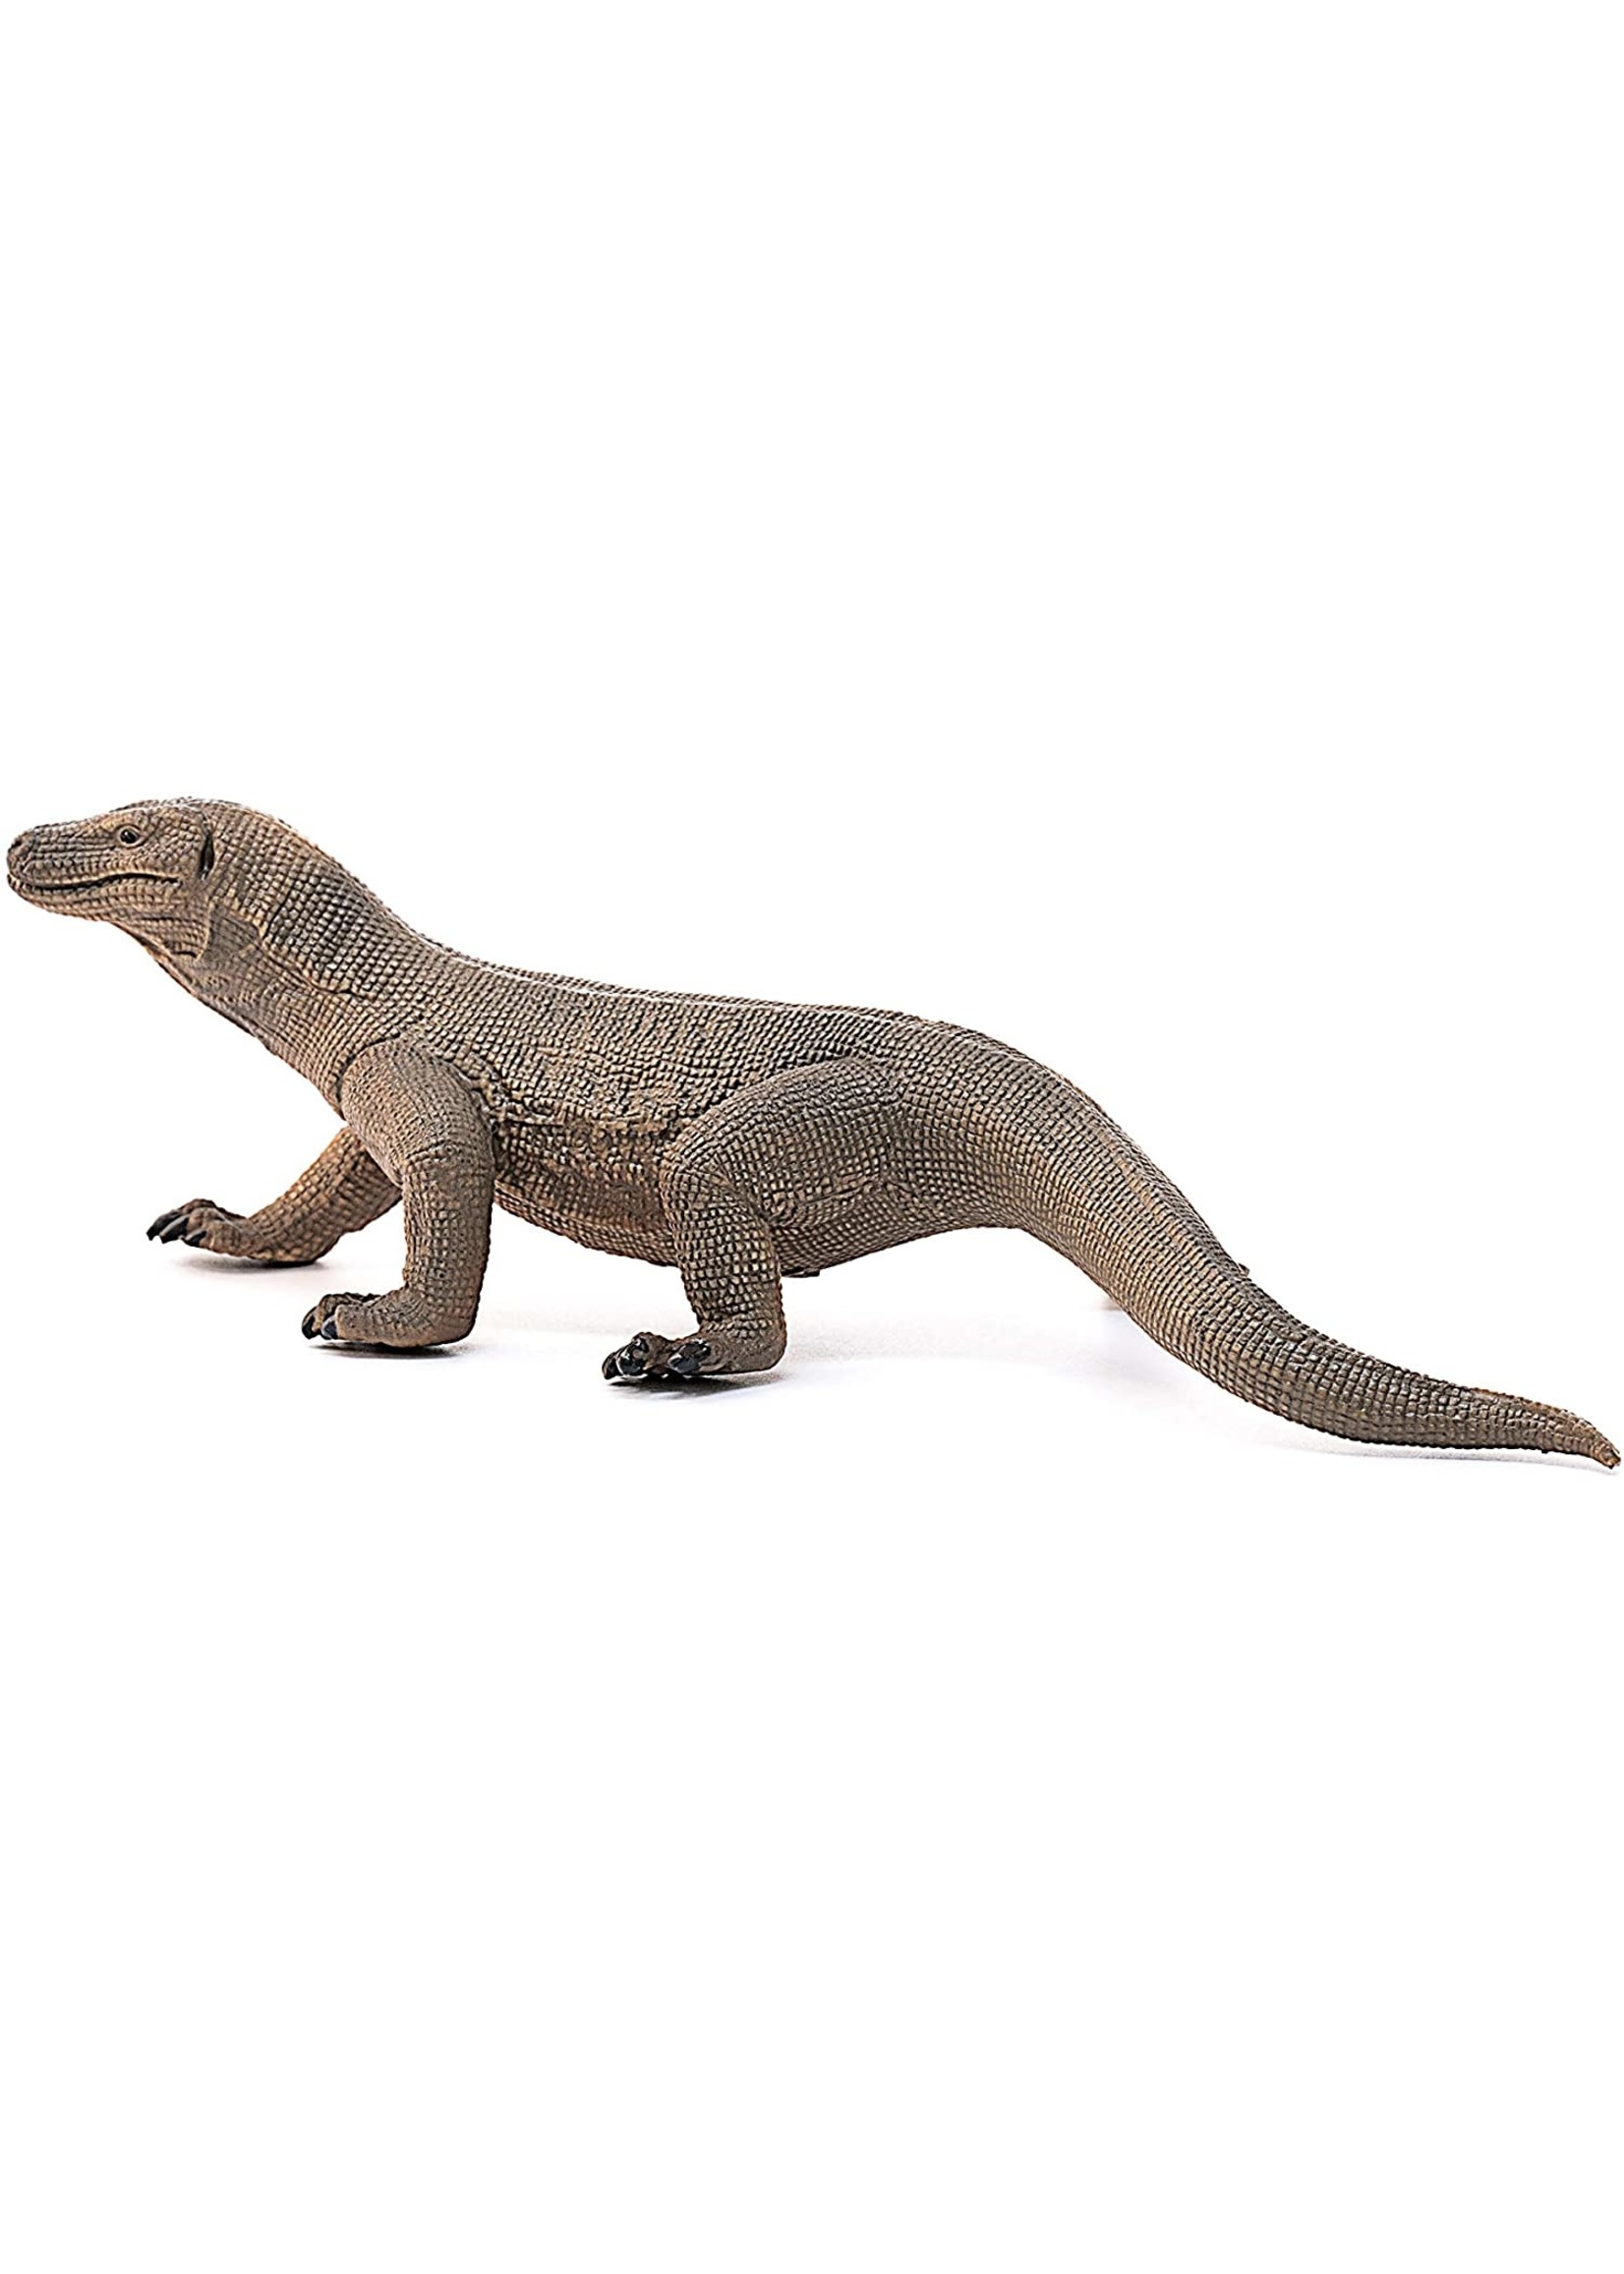 14826 Schleich Komodo dragon Wild Life Plastic Figure Figurine 